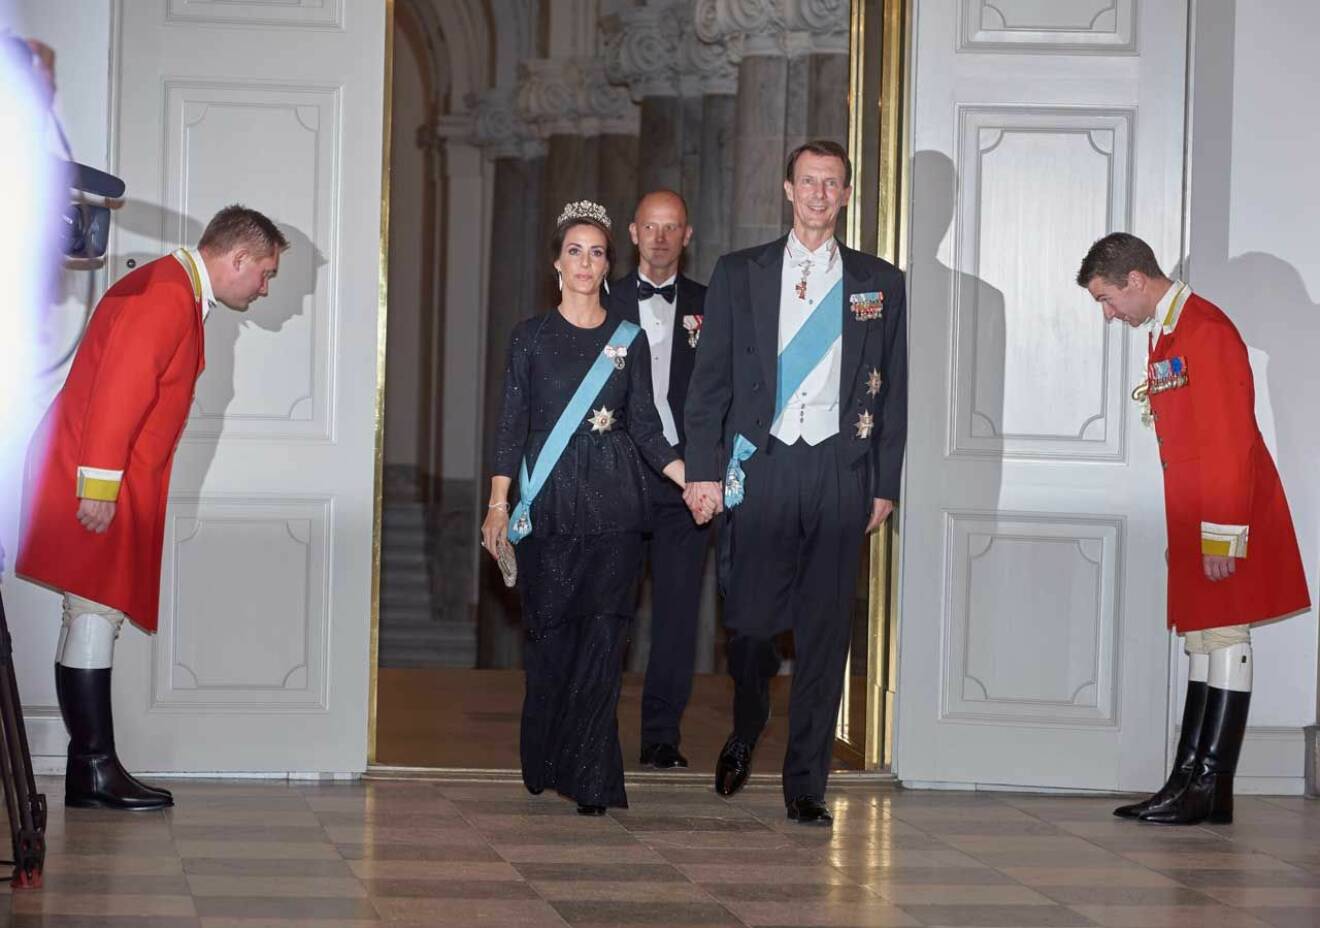 Prinsessan Marie och prins Joachim gör entré vid galamiddagen på Christiansborg Slot i Köpenhamn.